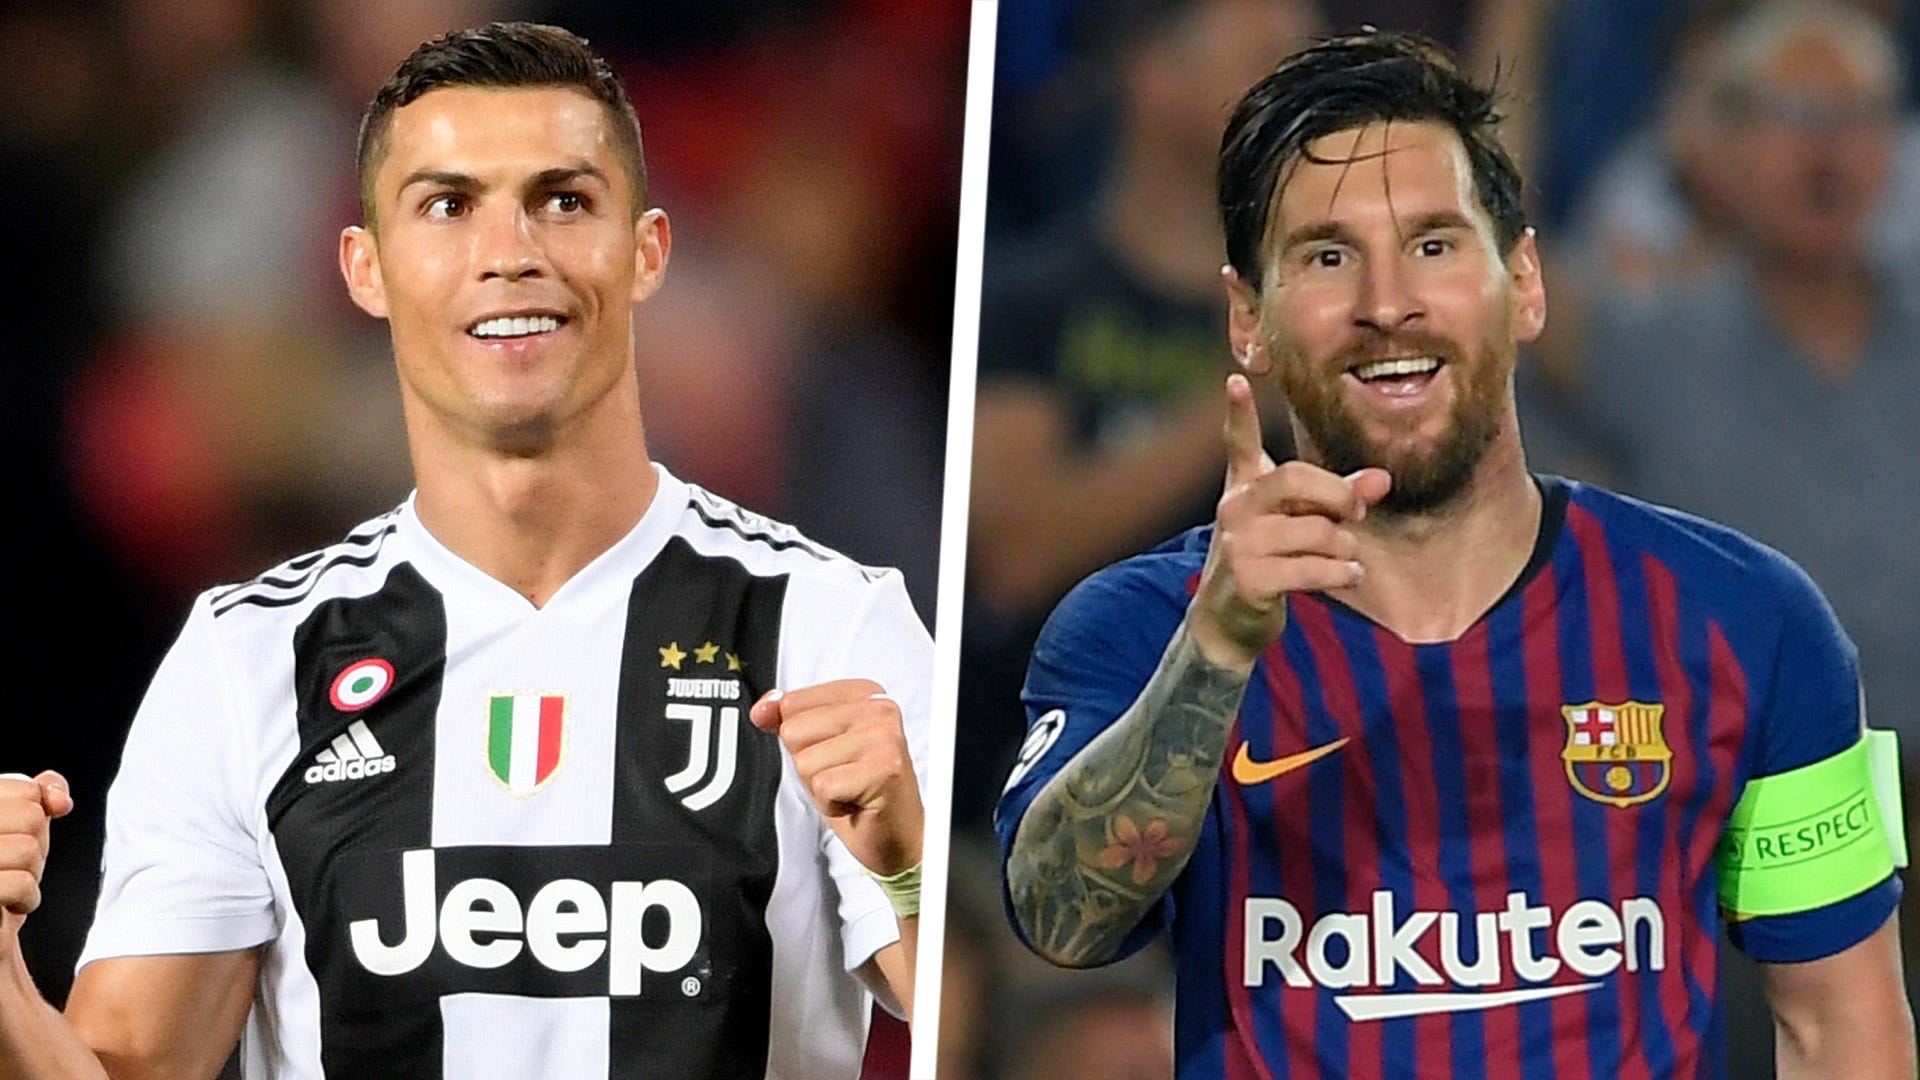 Lionel Messi và Cristiano Ronaldo là hai cầu thủ bóng đá hàng đầu thế giới, được yêu mến và ngưỡng mộ bởi những kỹ năng đặc biệt và lòng đam mê sân cỏ. Hãy xem hình ảnh của hai siêu sao này để cảm nhận được tinh thần đấu tranh và sự chiến thắng luôn đến với những người tận tâm.